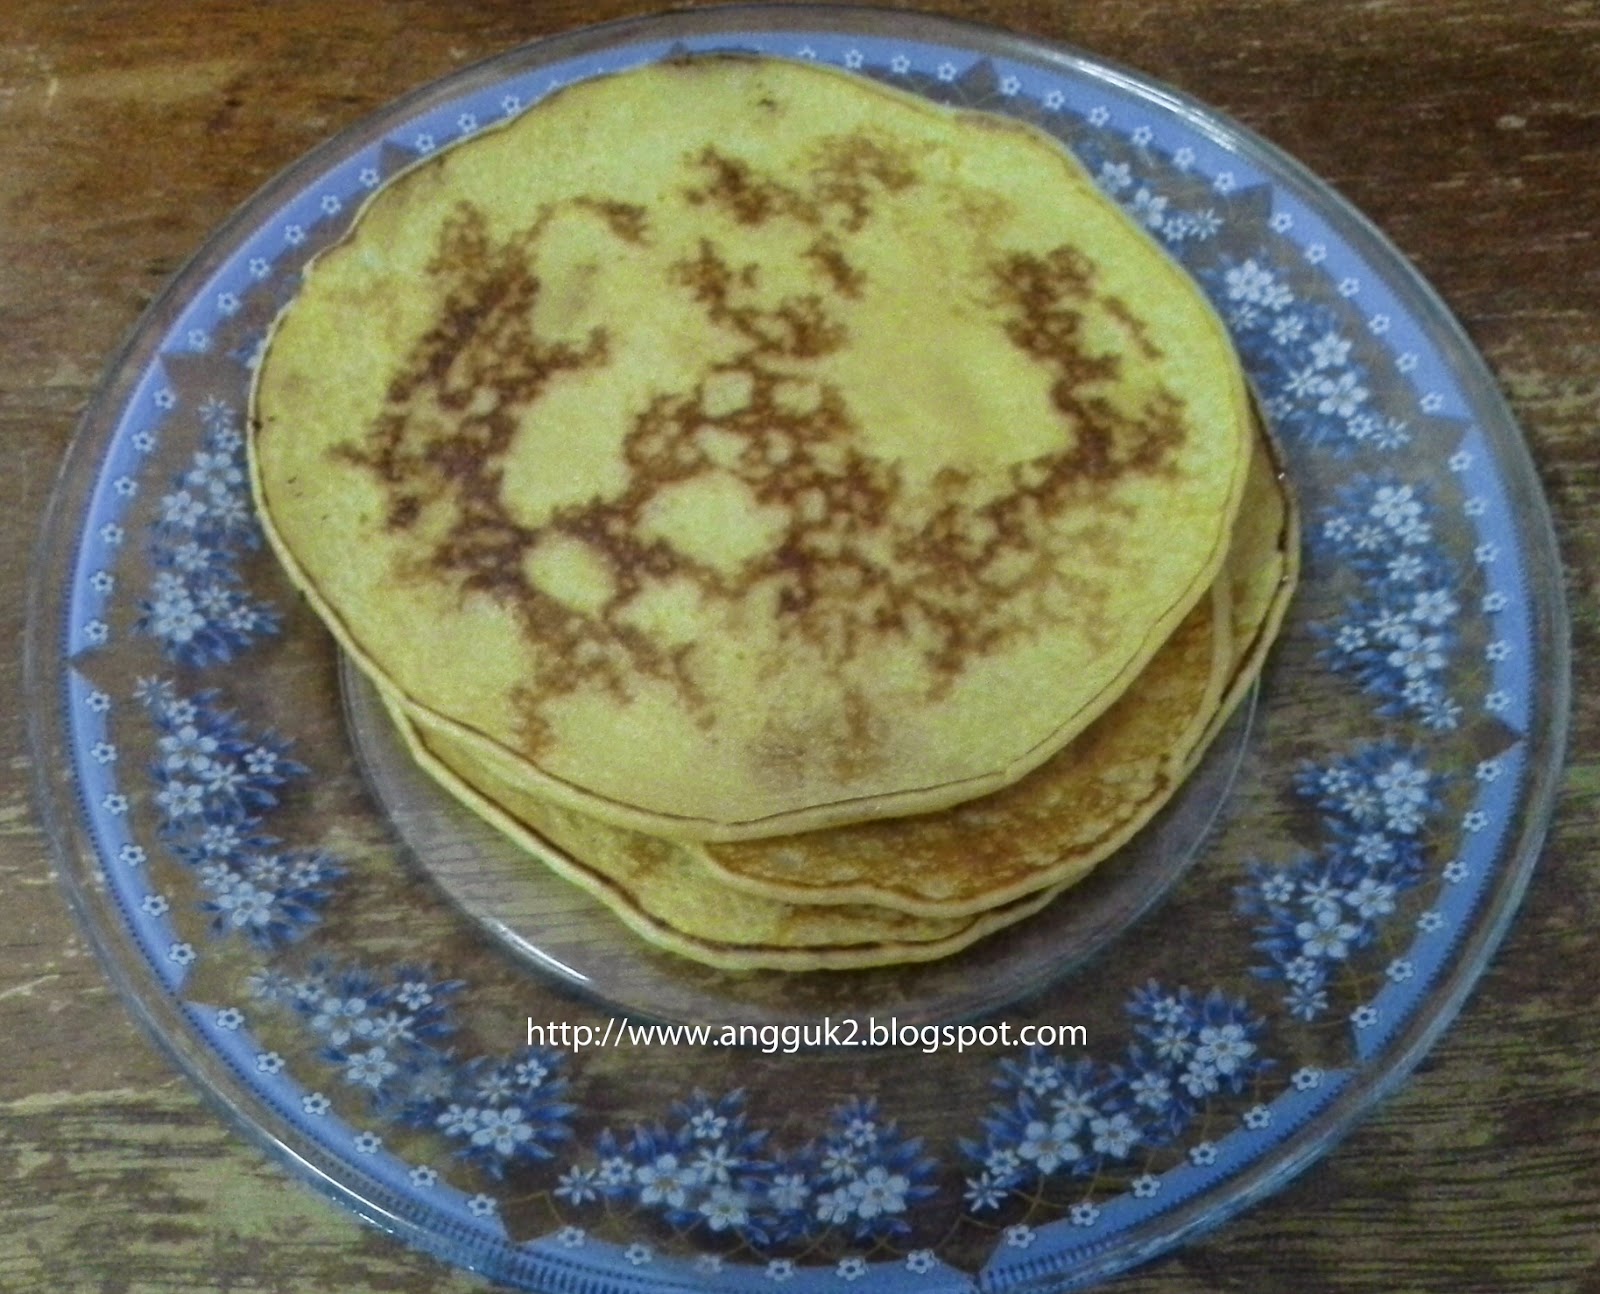 Resepi Lempeng Pancake Mudah - Merdeka cc